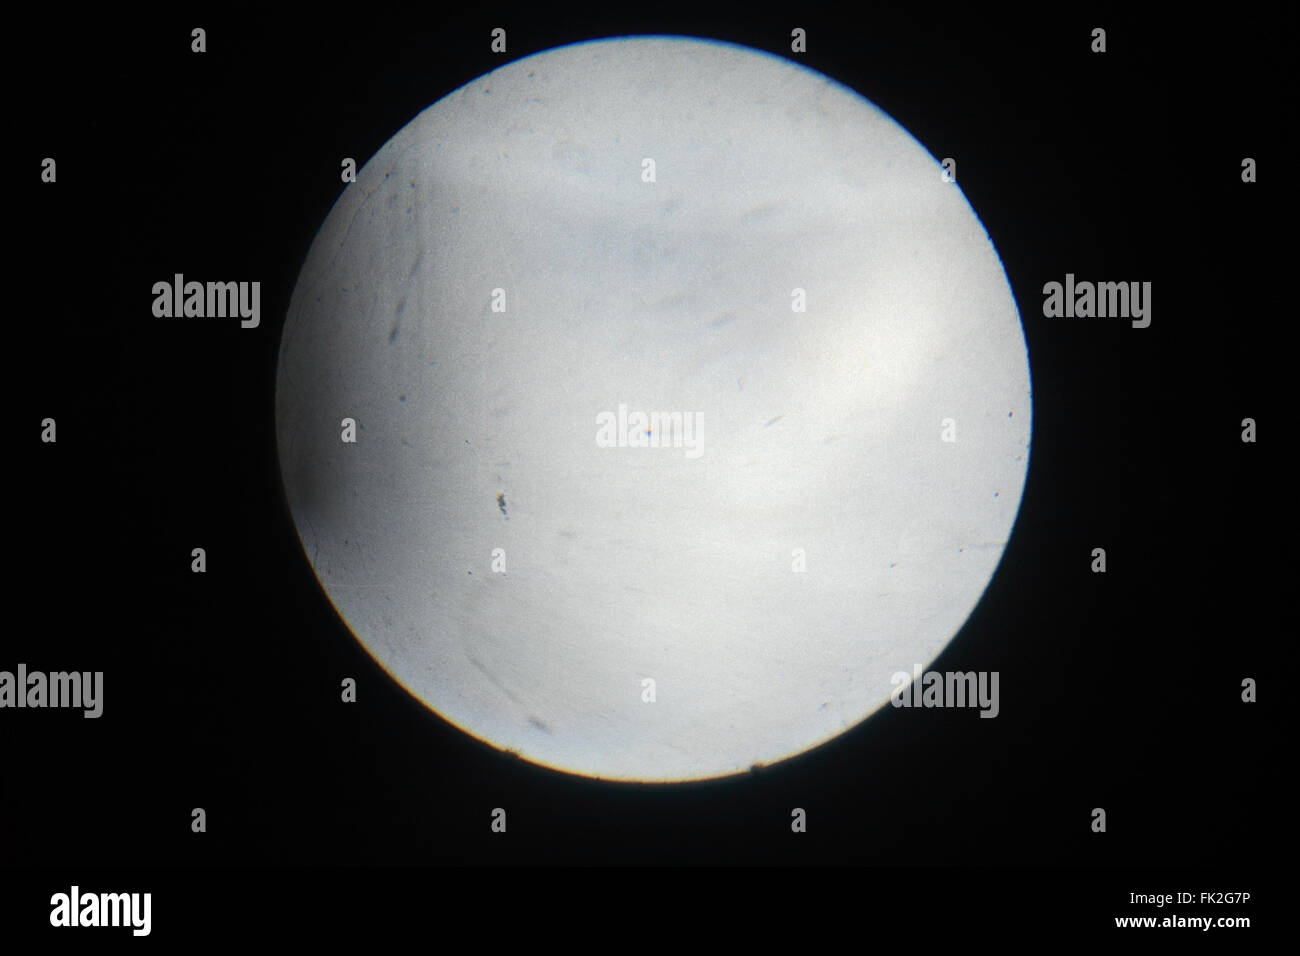 Der Kreis des Lichtes auf einem schwarzen Hintergrund aus dem Overhead-Projektor Stockfoto